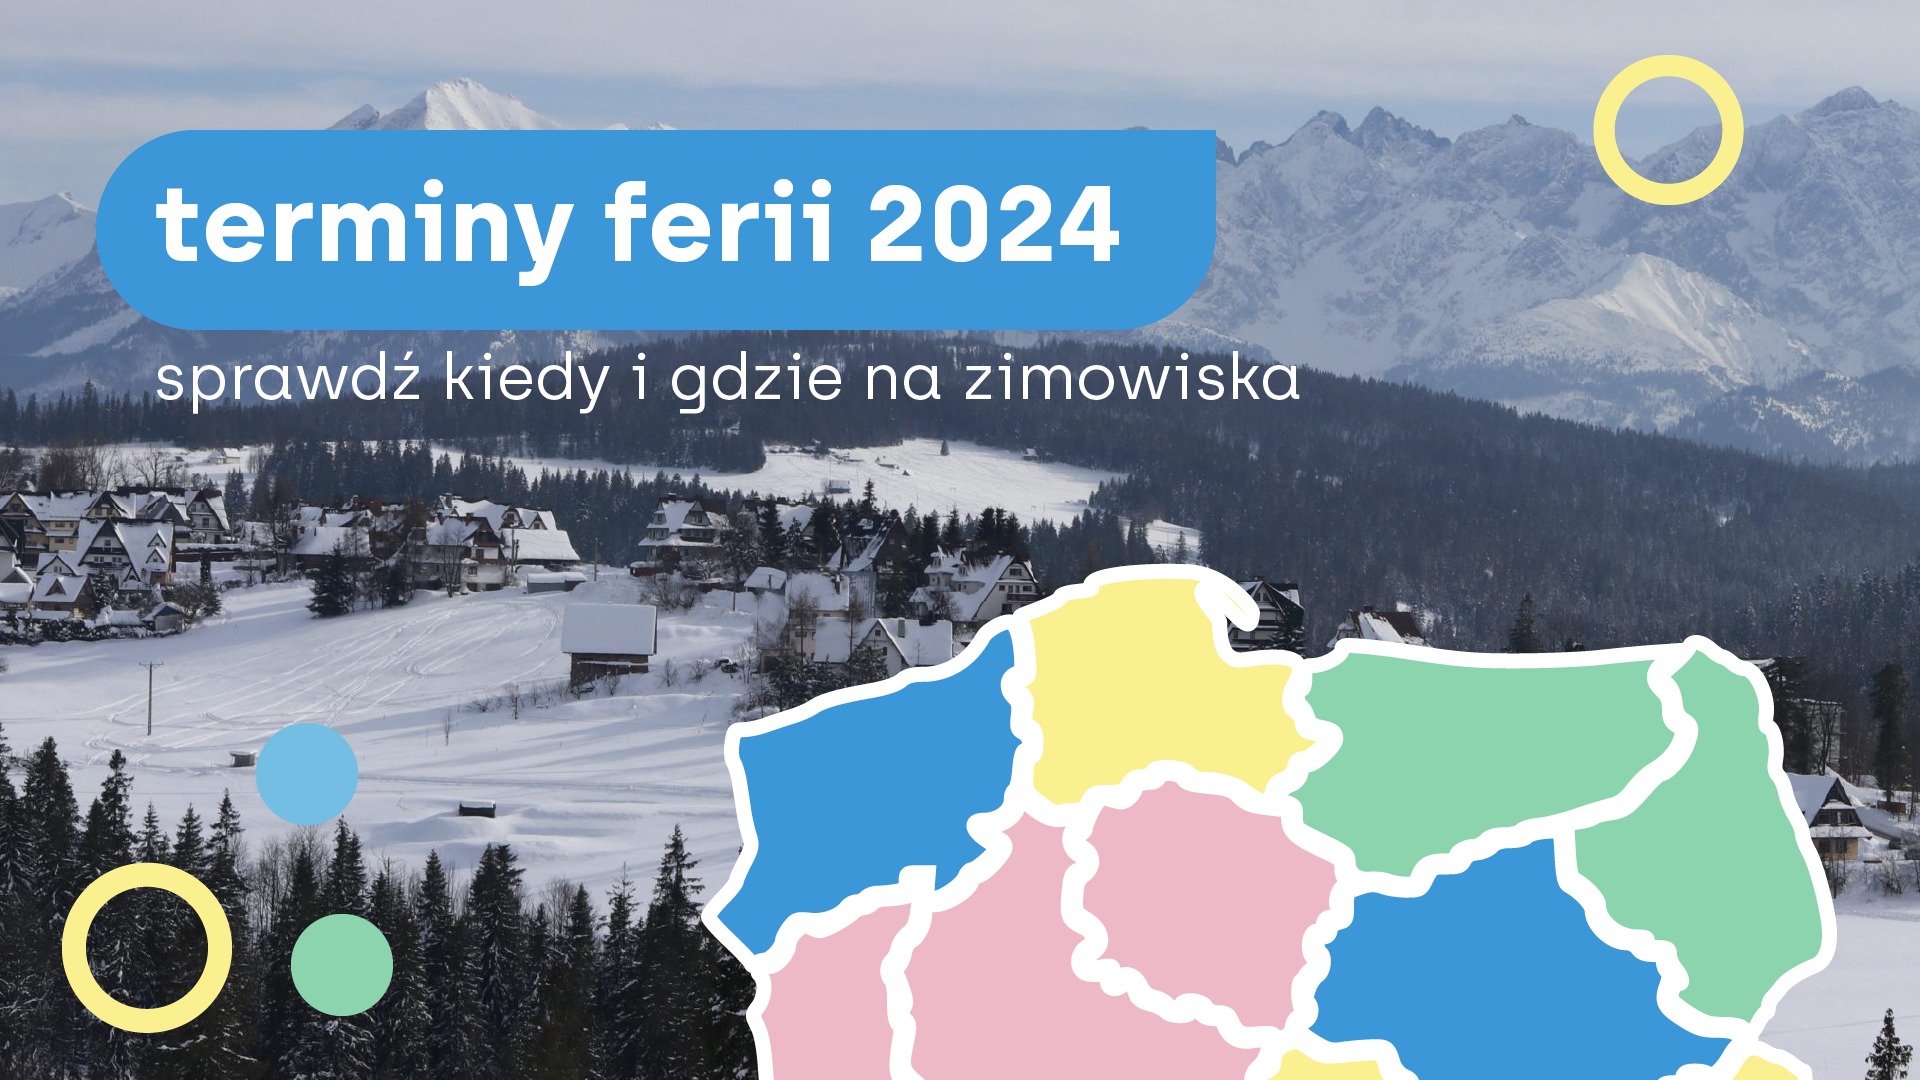 terminy ferii 2024 - sprawdź kiedy i gdzie na zimowiska